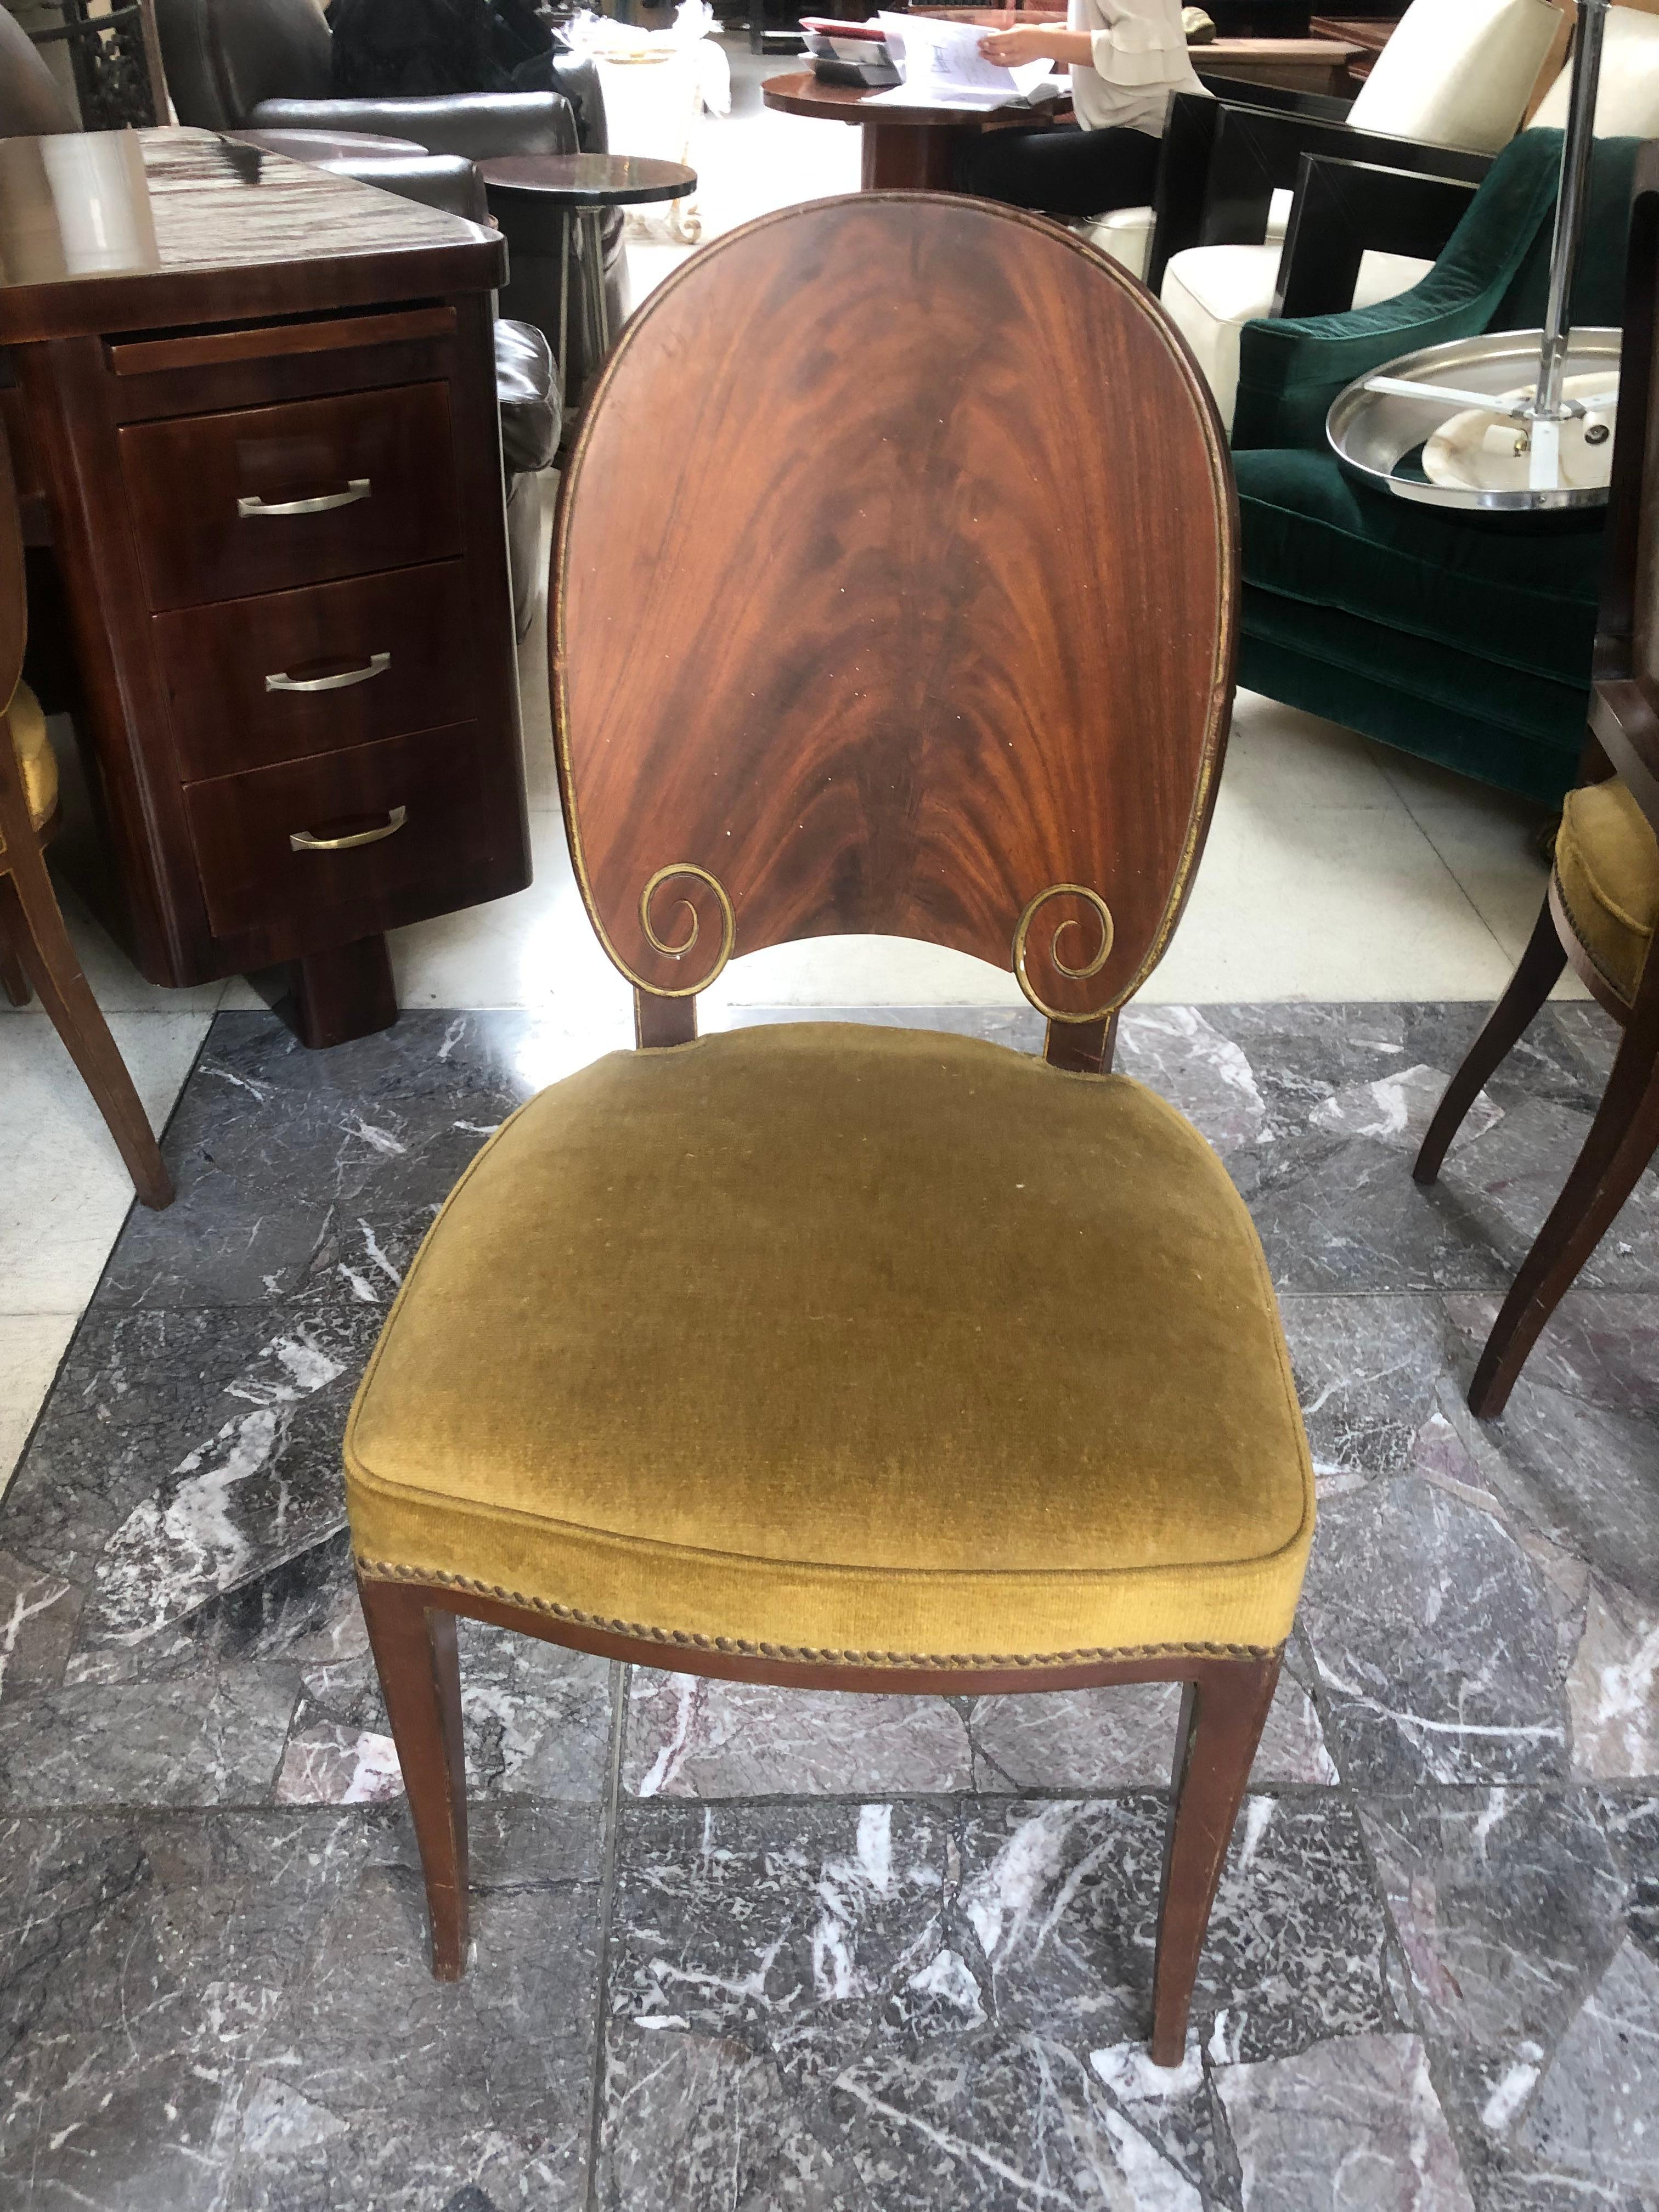 Luxe 12 chaises Art Déco en bois.

Année 1930
Pays : Français
12 chaises élégantes et sophistiquées.
La qualité des chaises et le bois exotique utilisé les rendent uniques. Il s'agit d'une icône de distinction.
Nous sommes spécialisés dans la